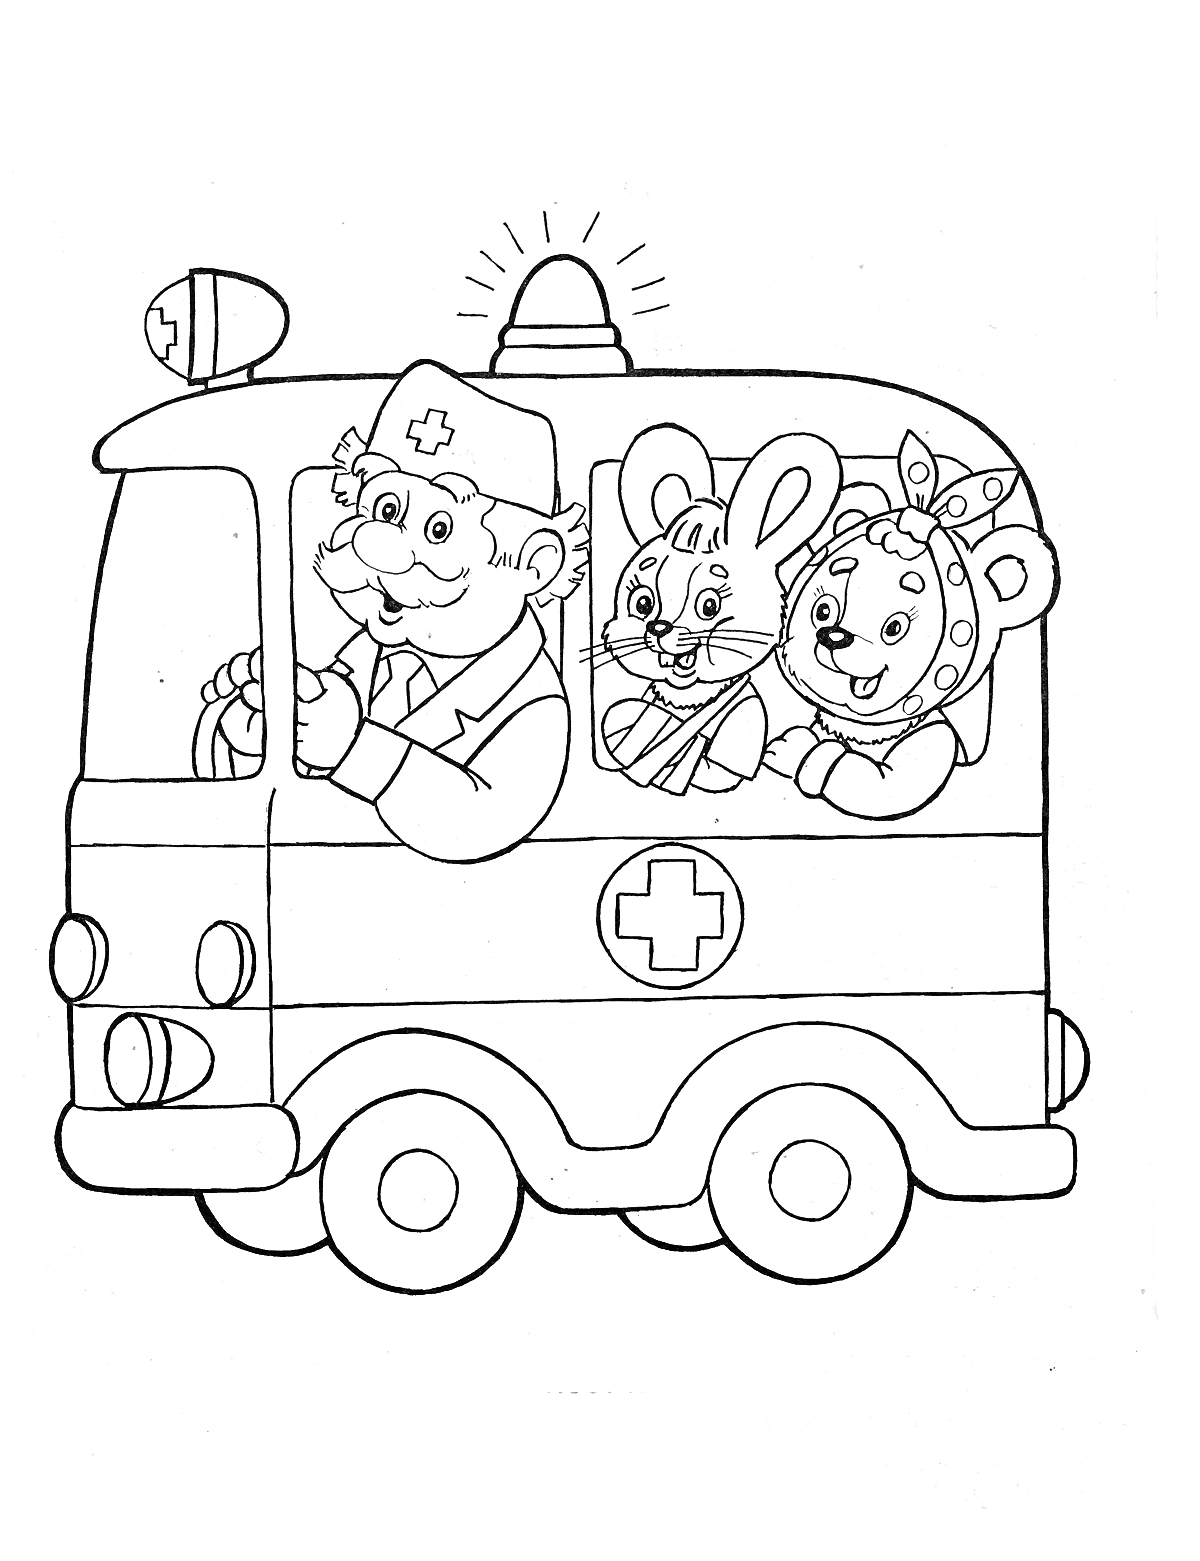 На раскраске изображено: Скорая помощь, Доктор, Заяц, Медицинская помощь, Мультипликационные персонажи, Мигалки, Мышь, Авто